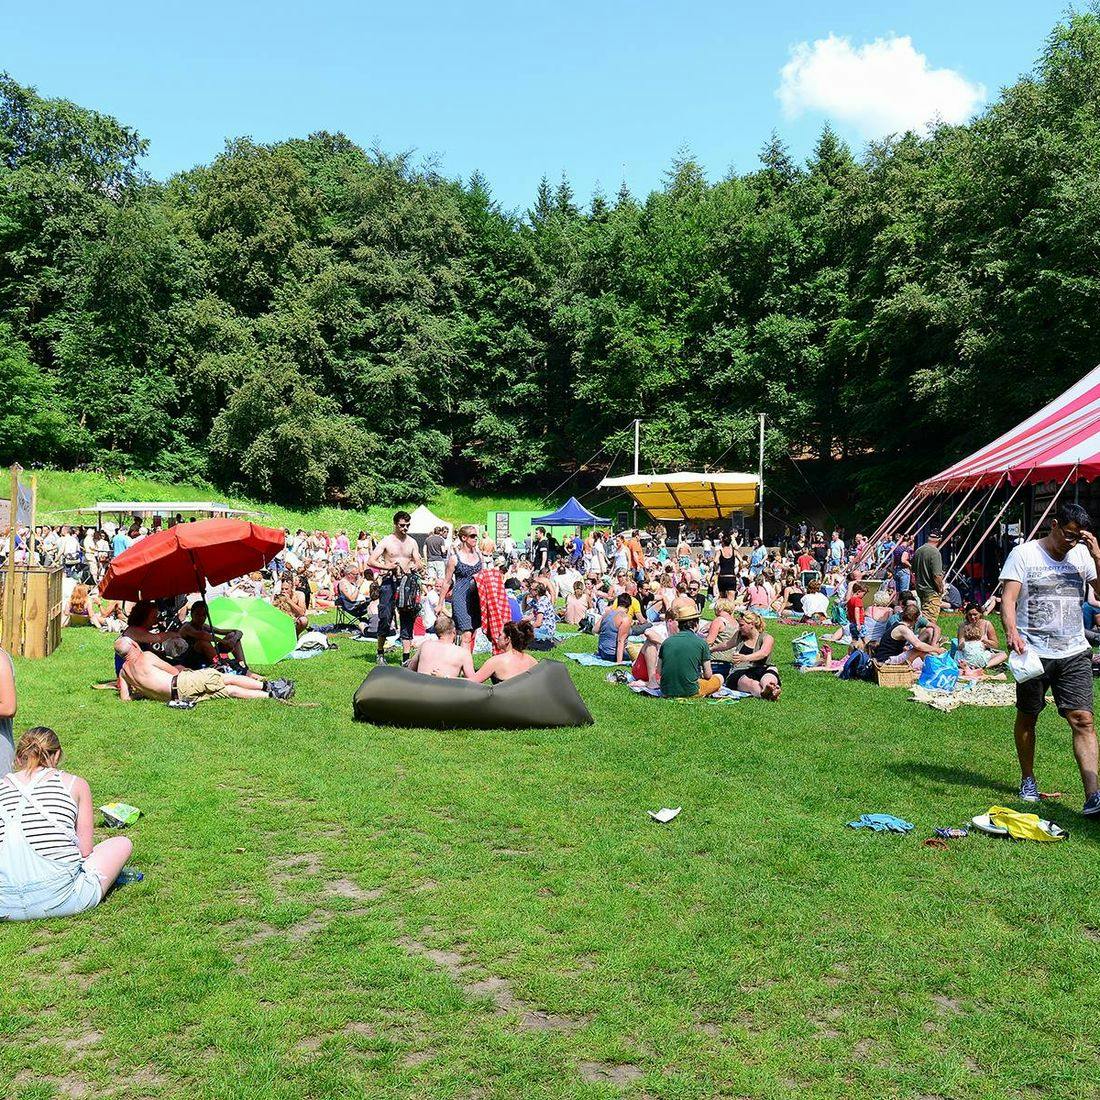 Foto van een zonnig en gezellig festival in een groene, bosrijke omgeving